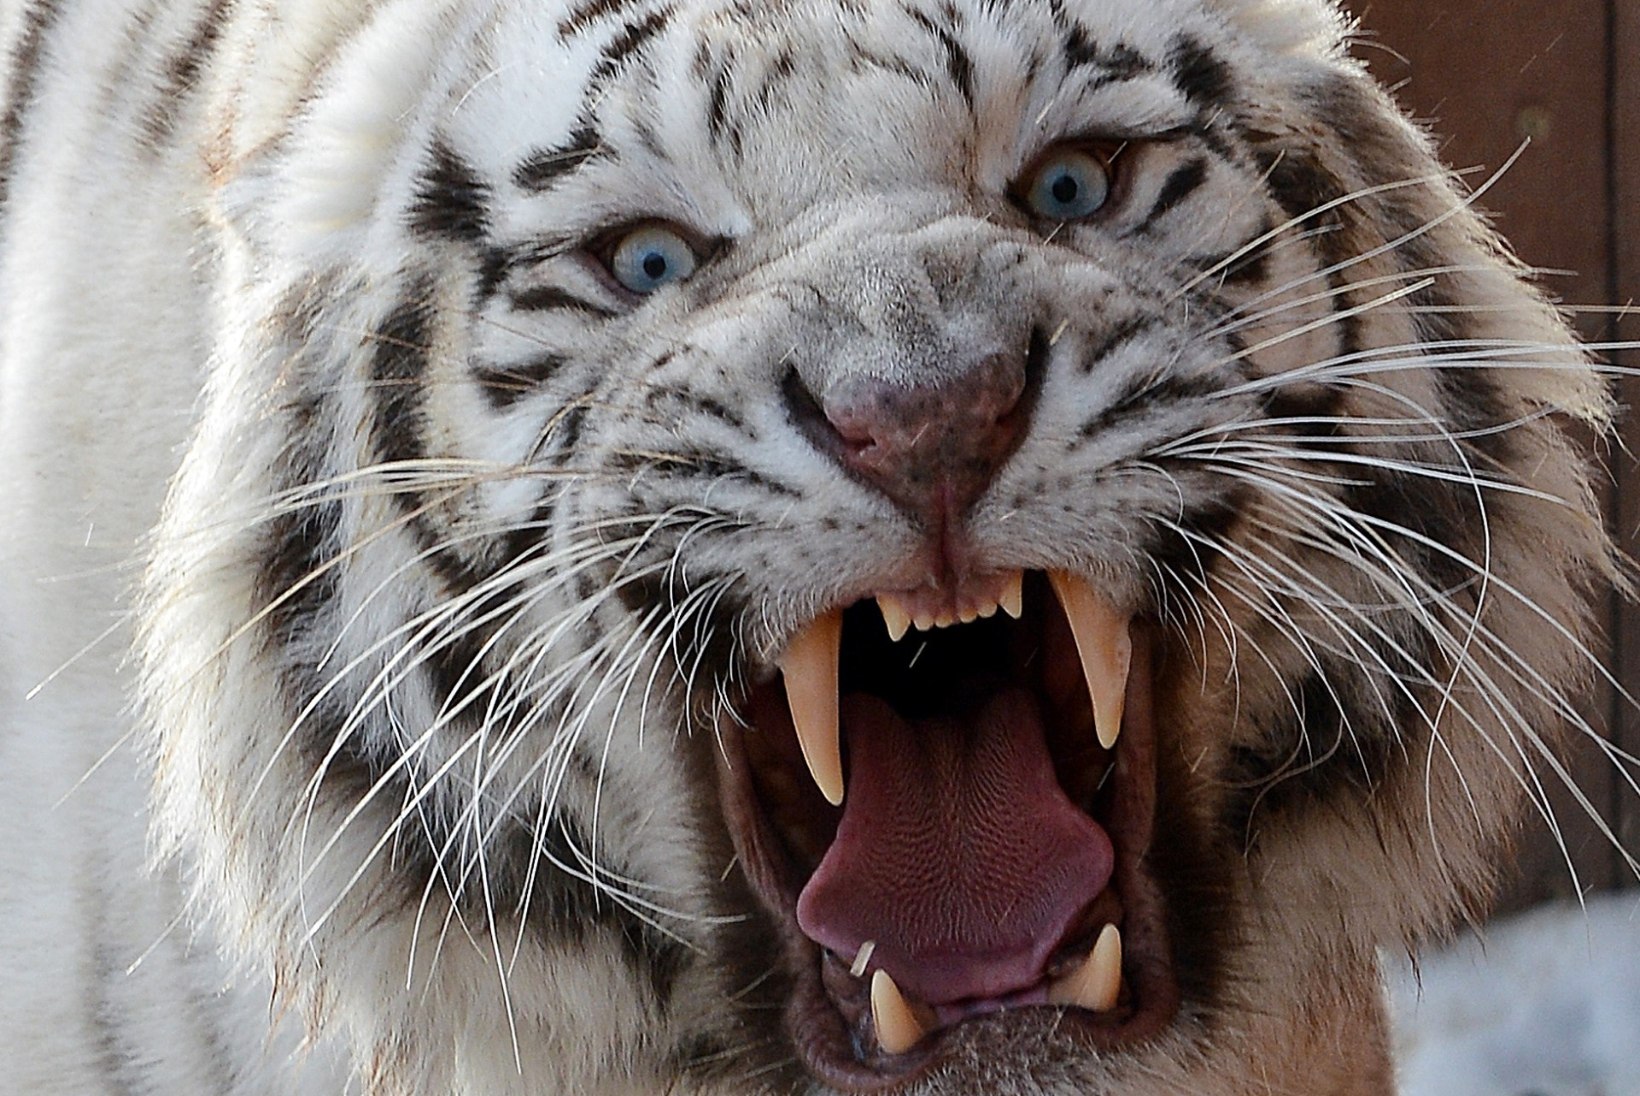 ÕHTULEHE VIDEO | 1 küsimus Kalev/Cramole: kas võitleksid pigem 10 jänesesuuruse tiigri või 1 tiigrisuuruse jänesega?